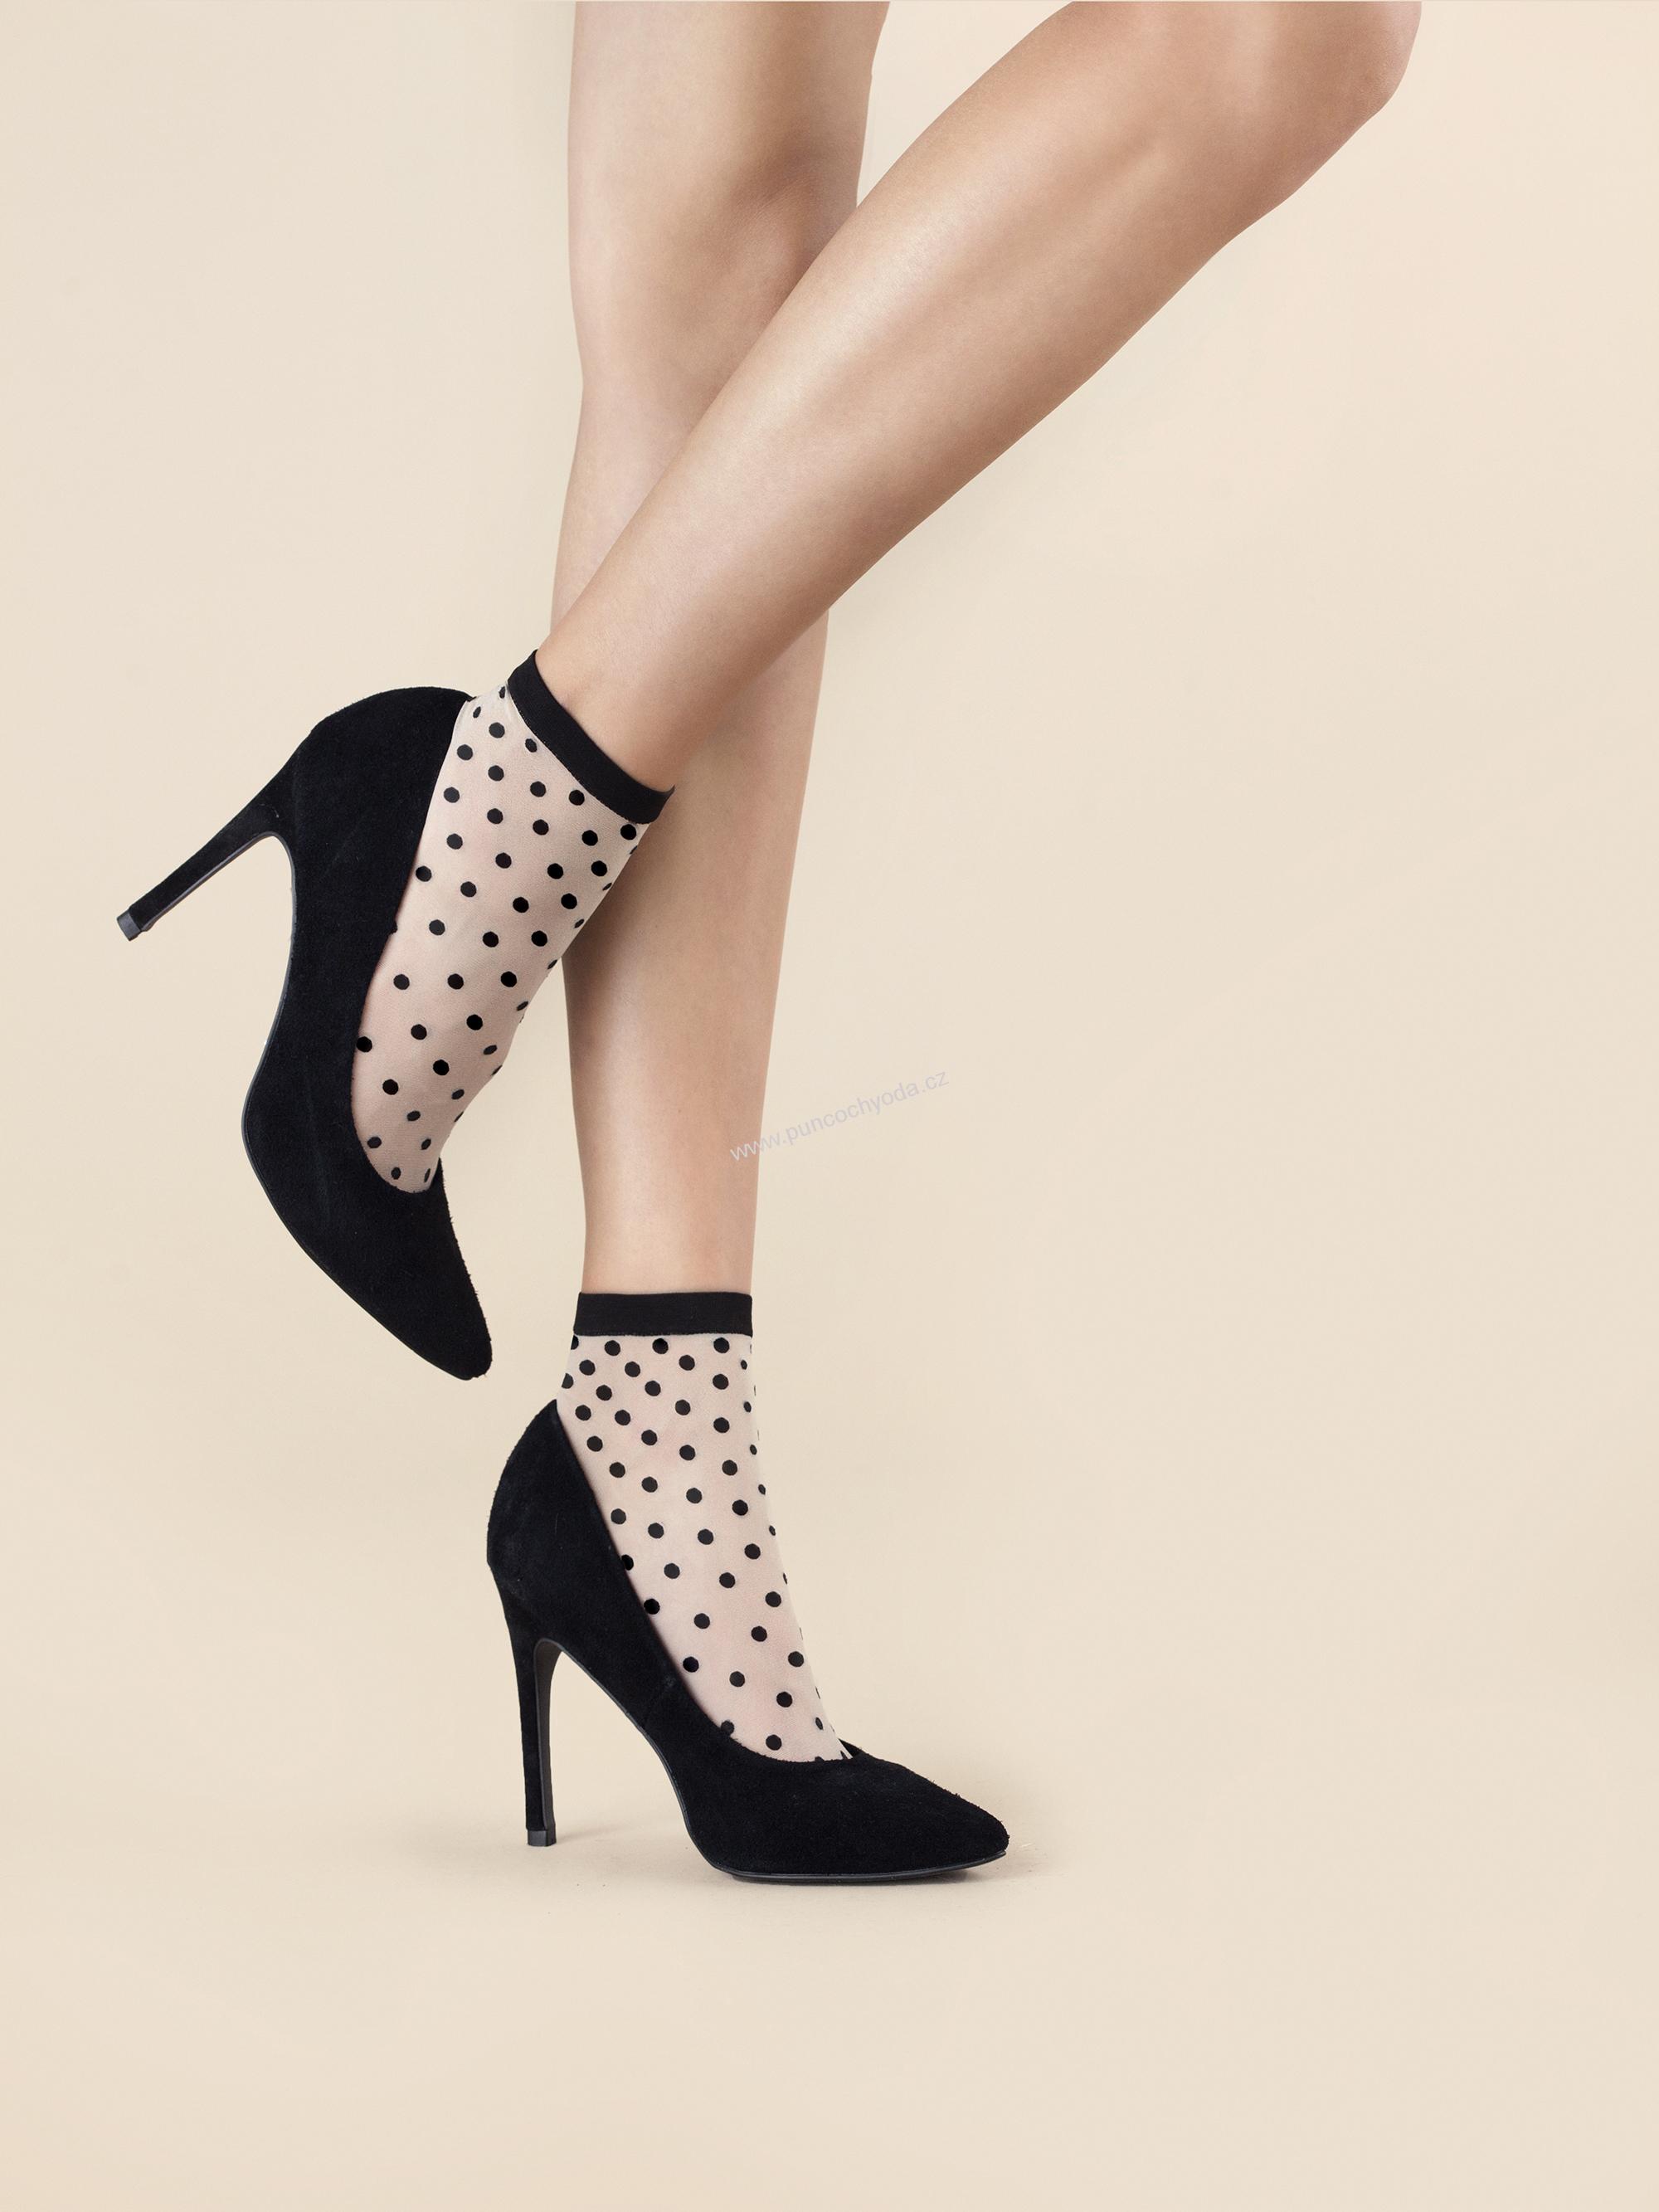 Dámské ponožky Cute G 1035 20 den - Fiore - Béžovo-černá/uni